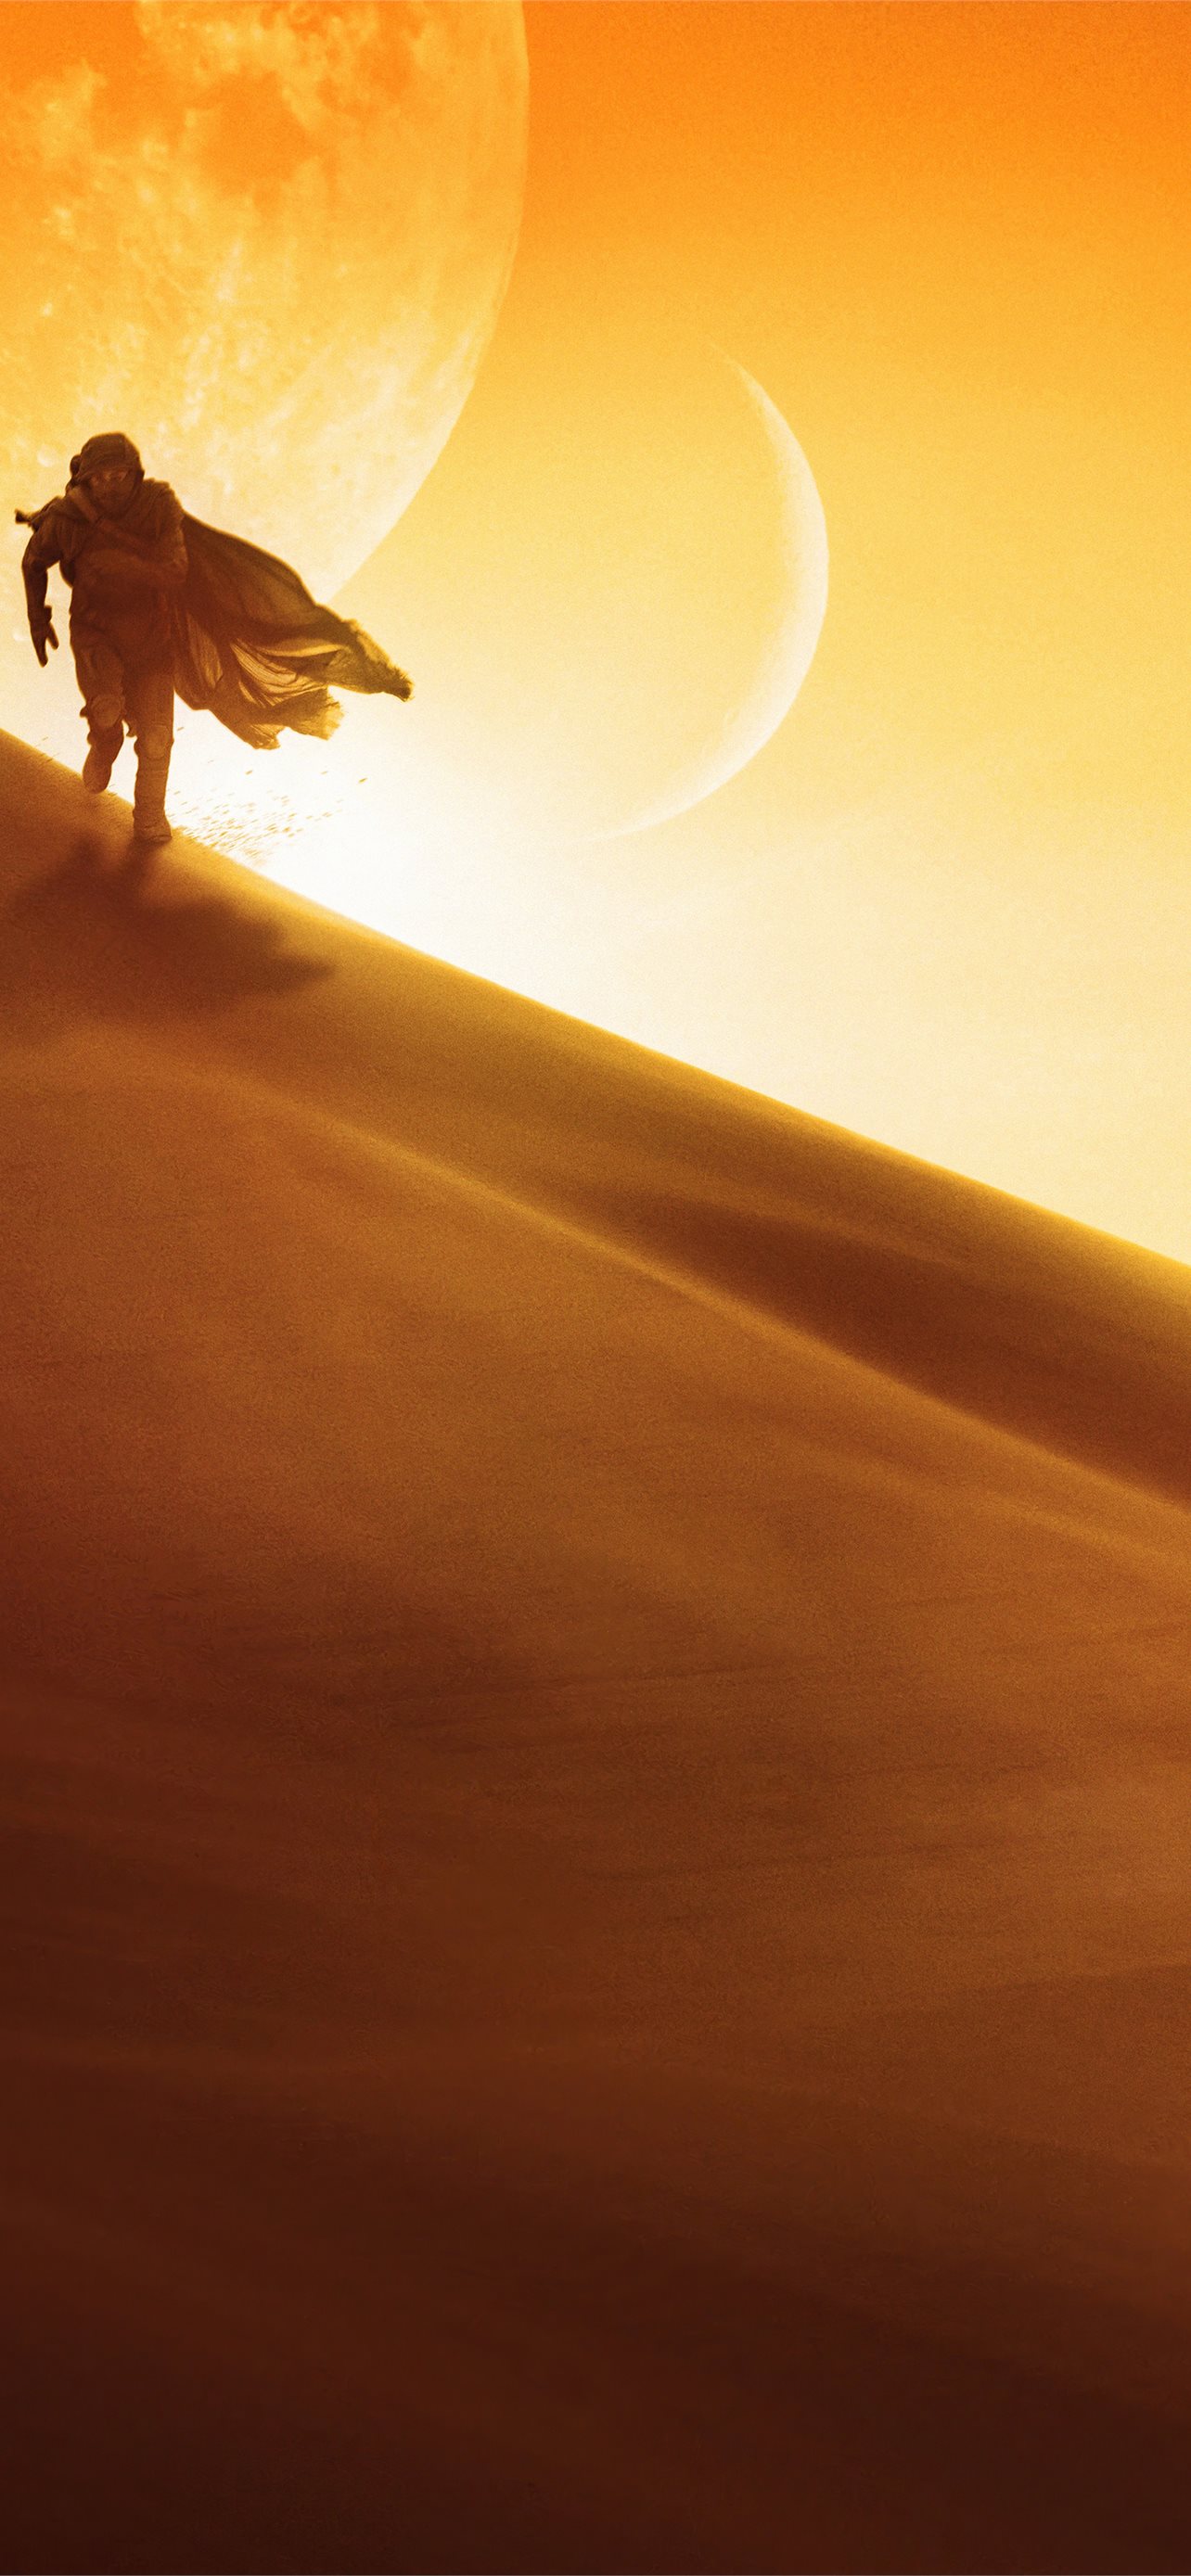 Dune 2021 Movie HD Wallpapers  4K Backgrounds  Wallpapers Den